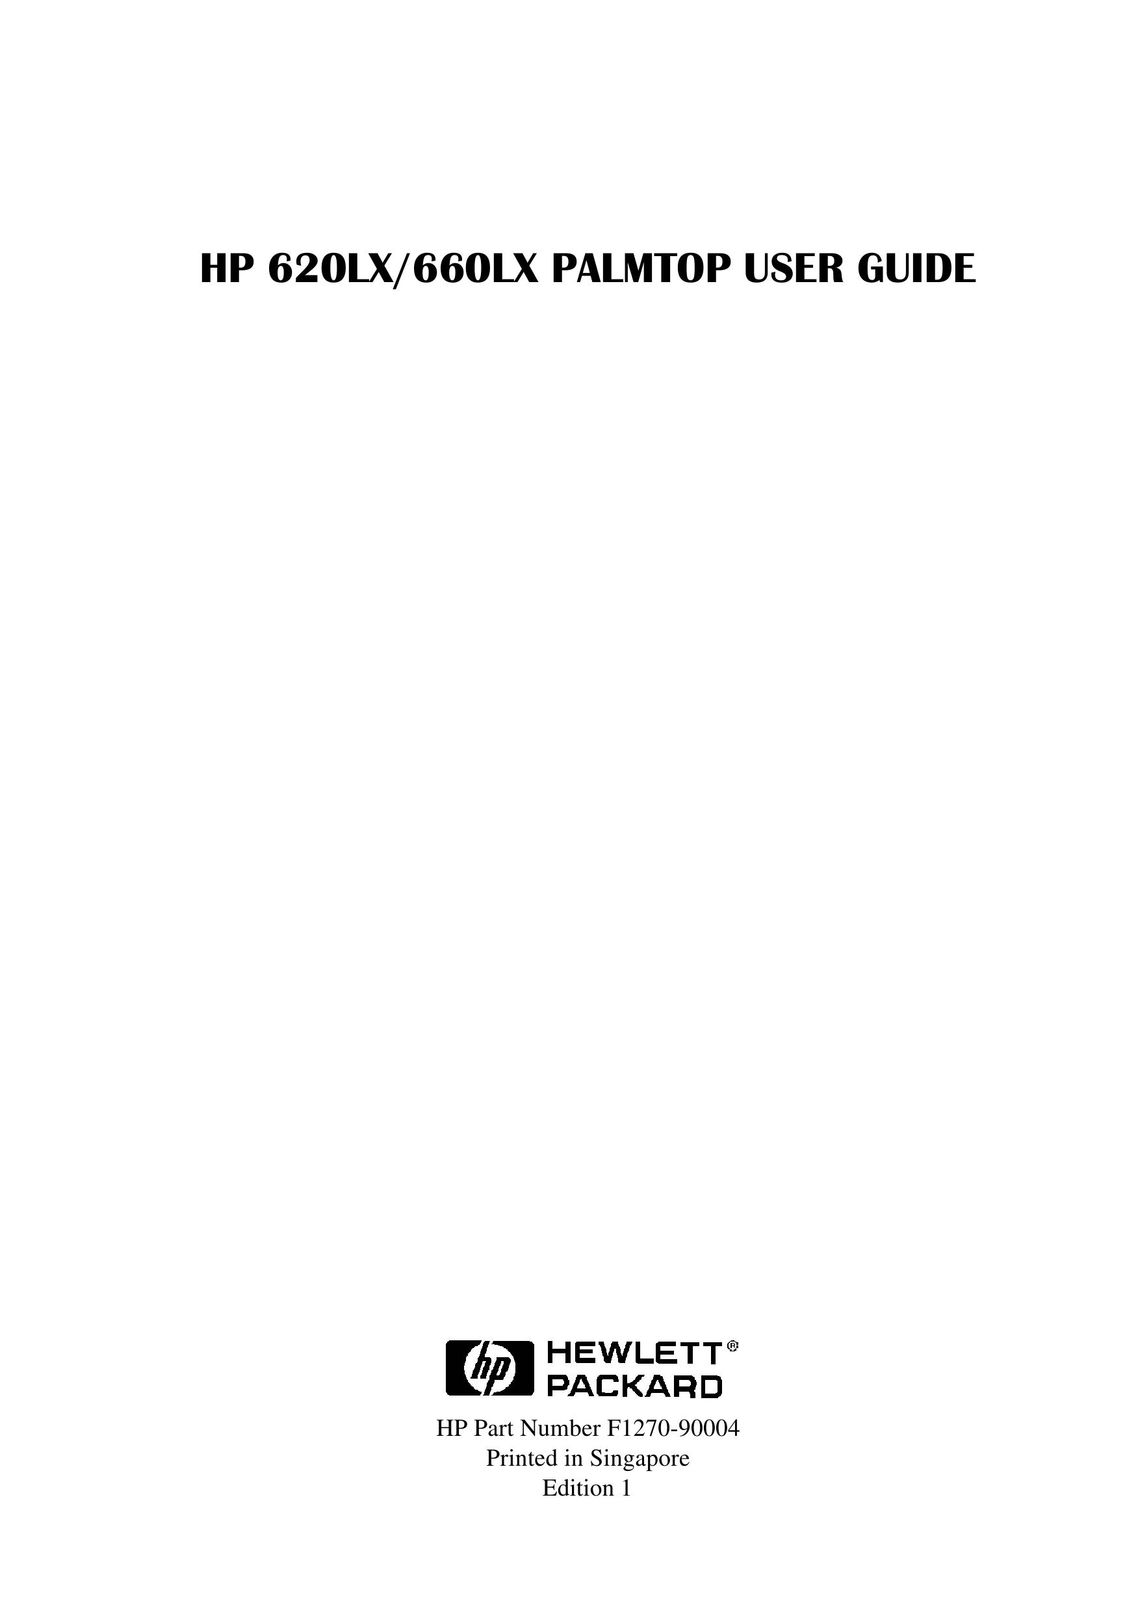 HP (Hewlett-Packard) 660LX PDAs & Smartphones User Manual